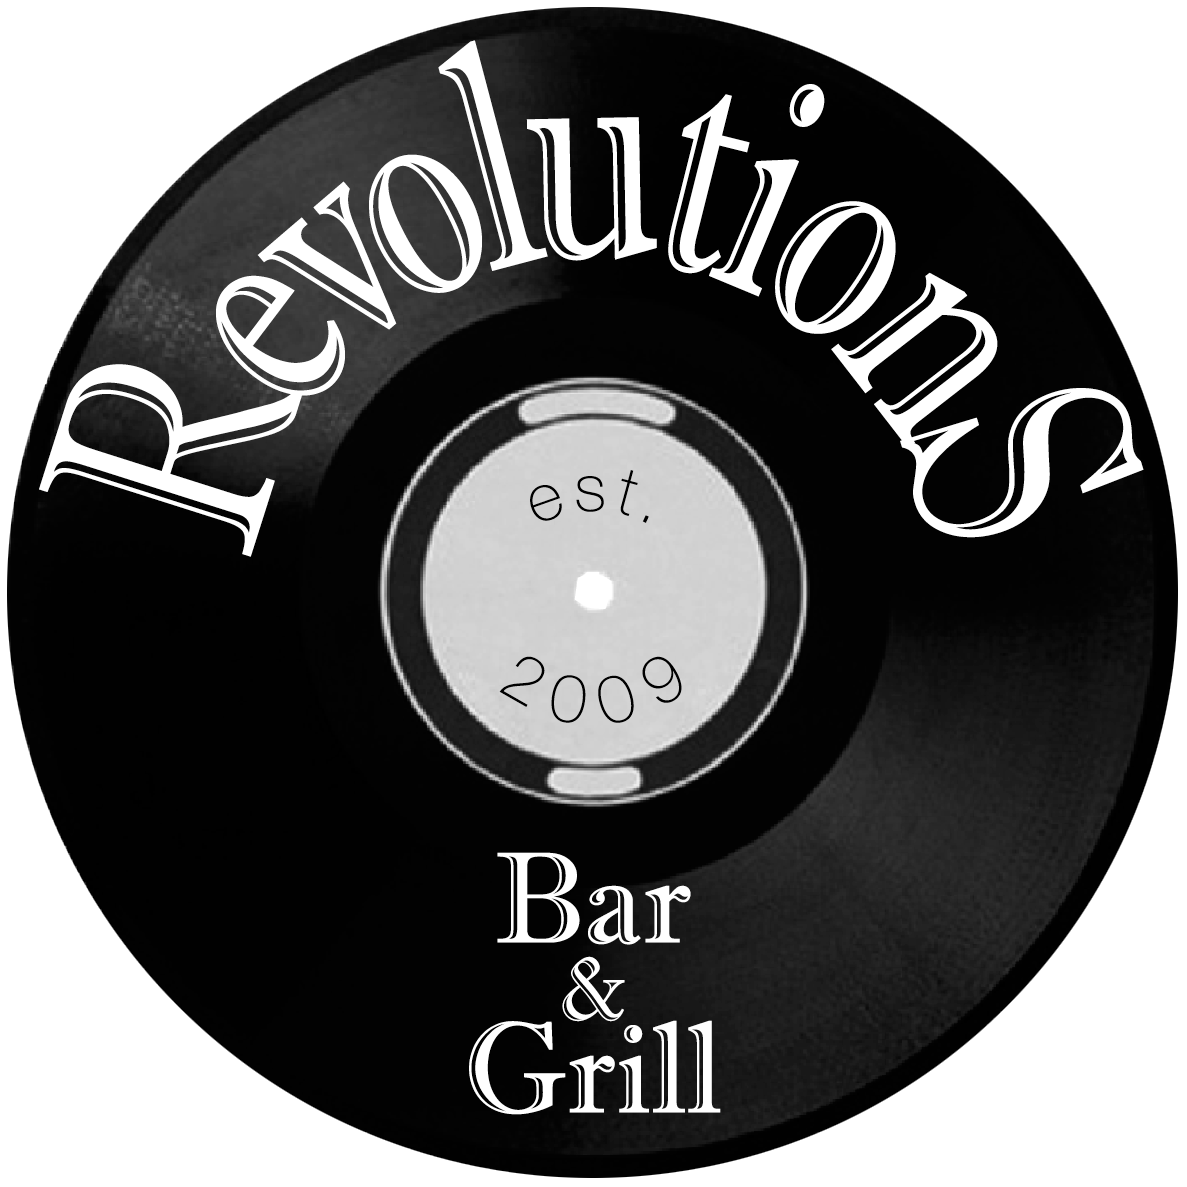 Revolutions Bar & Grill